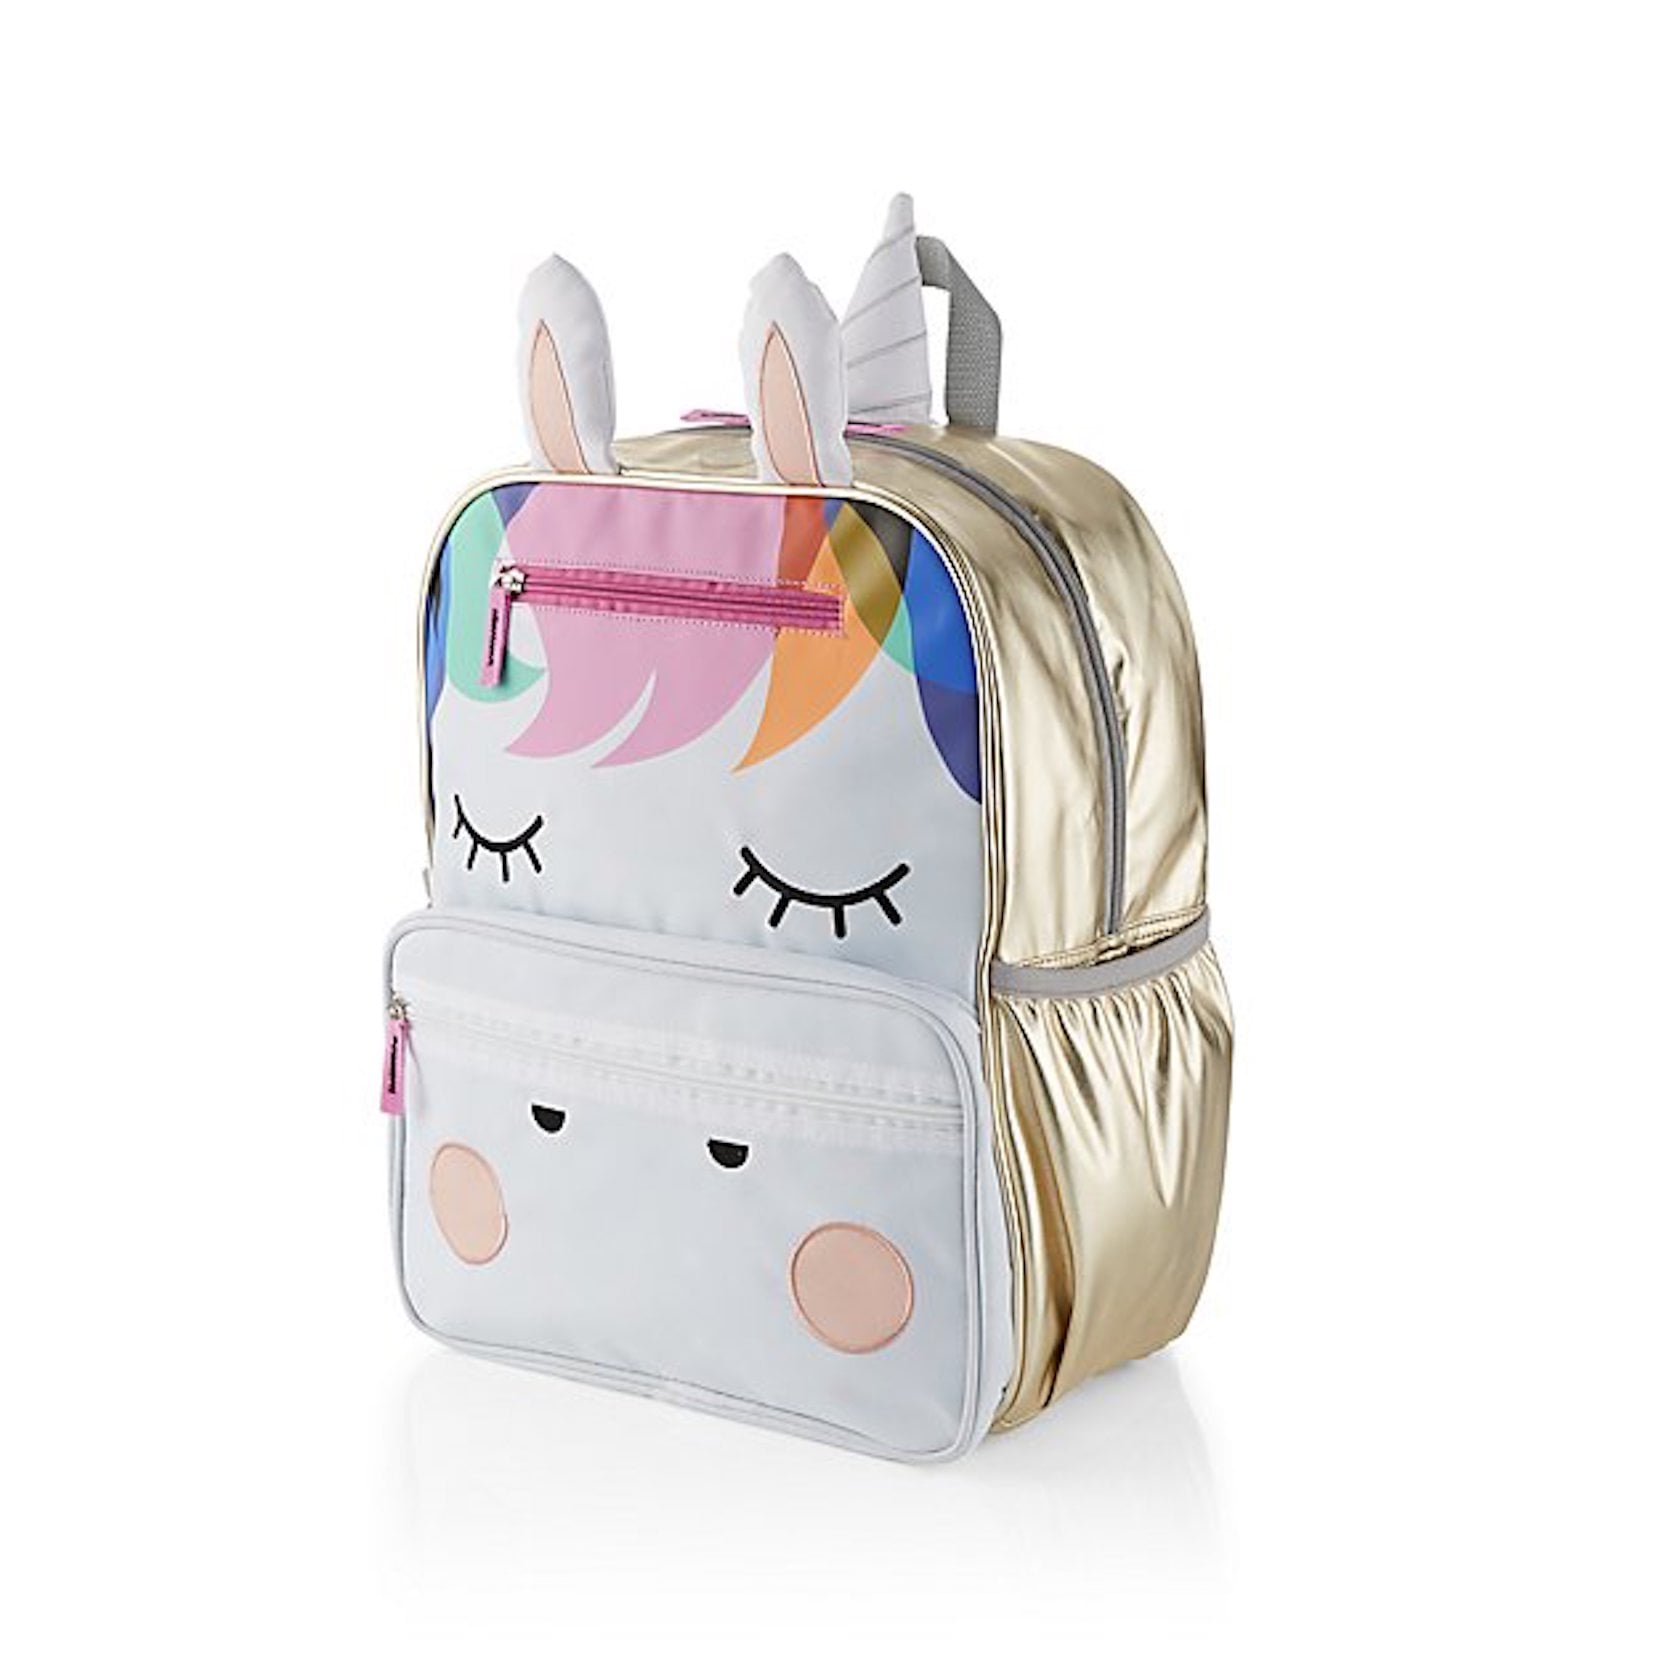 Cool Backpacks For Kids POPSUGAR Family